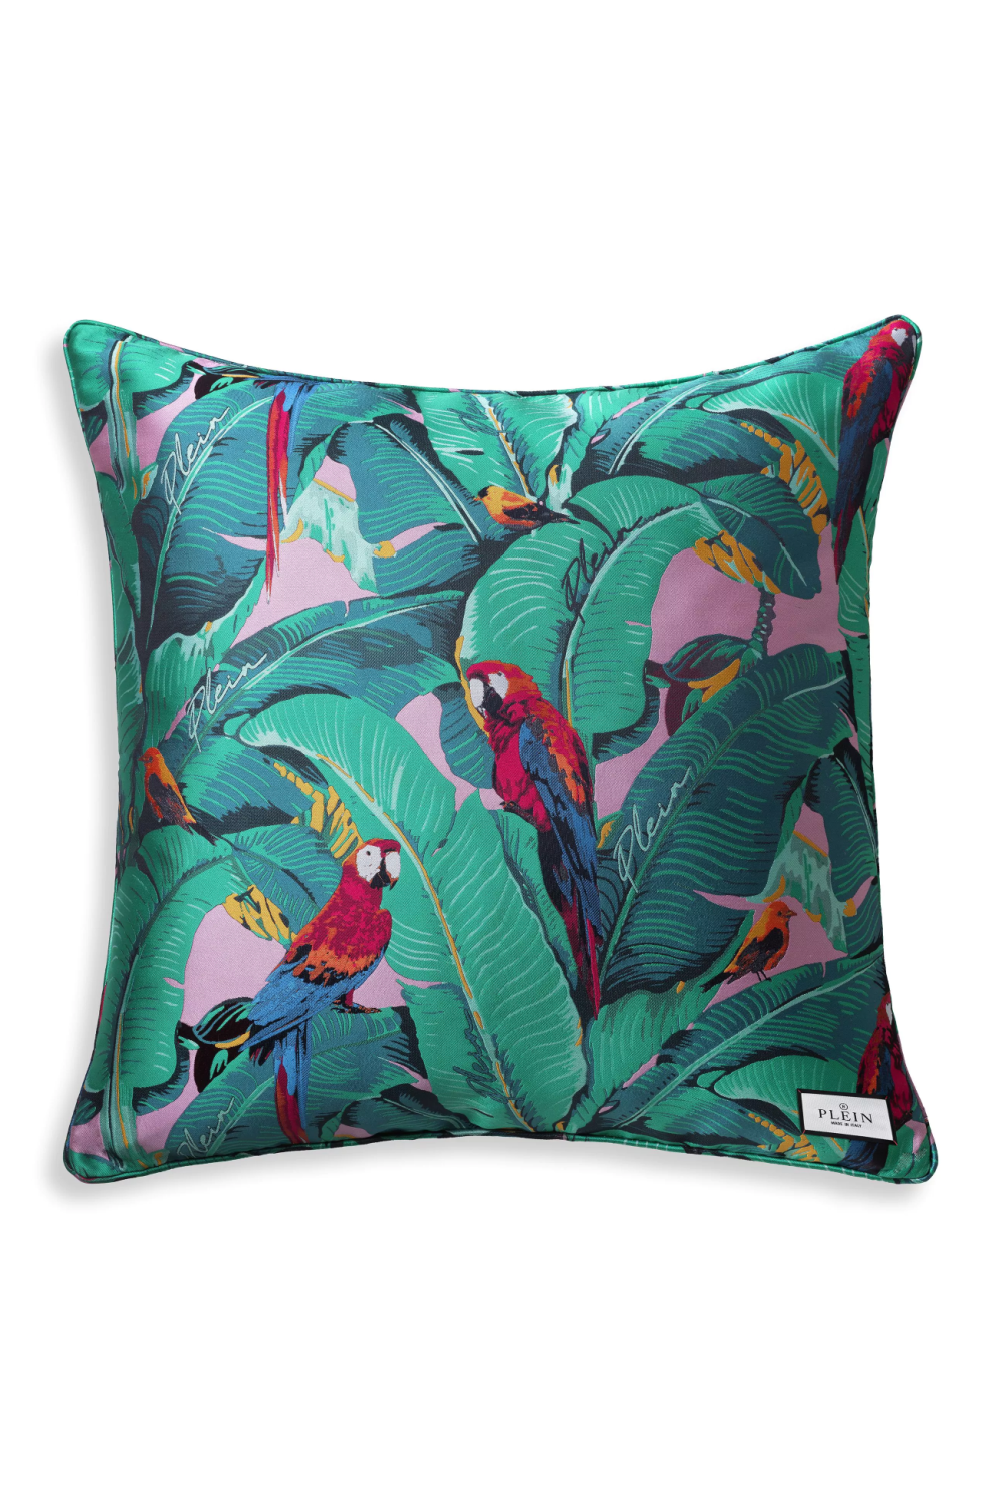 Wildlife Design Jacquard Cushion M | Philipp Plein Parrot | Oroa.com